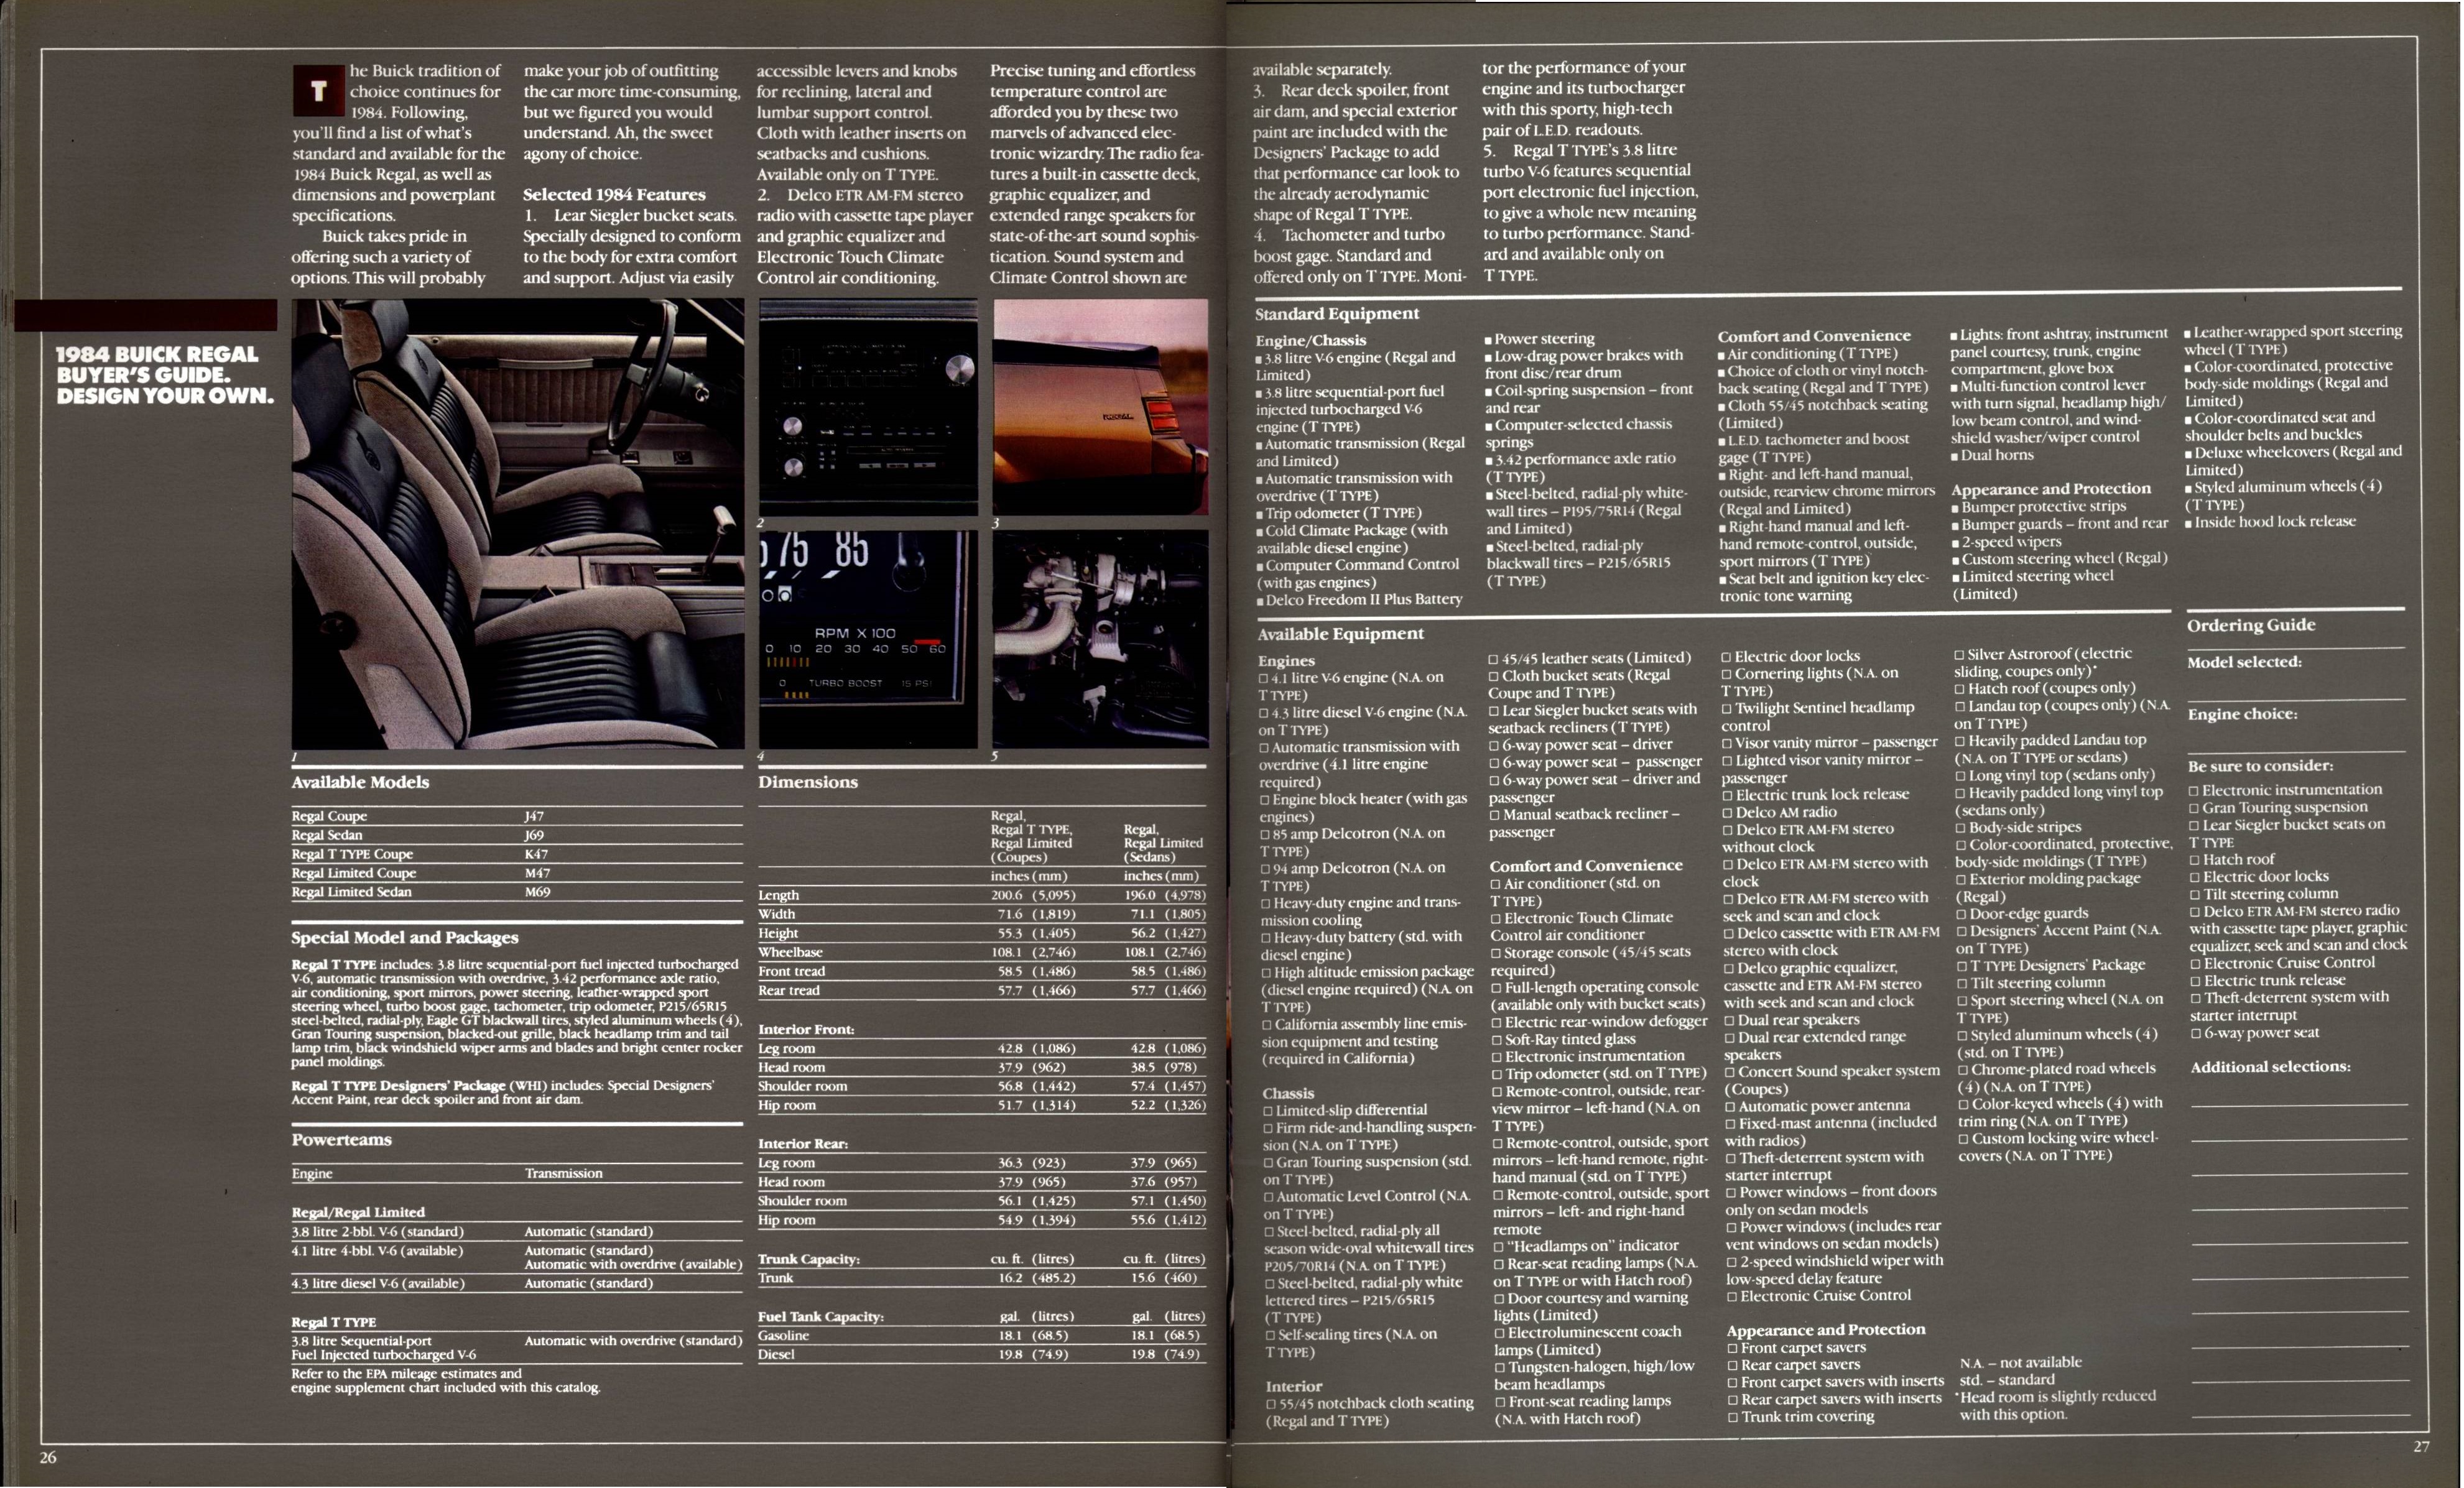 1984 Buick Full Line Prestige 26-27